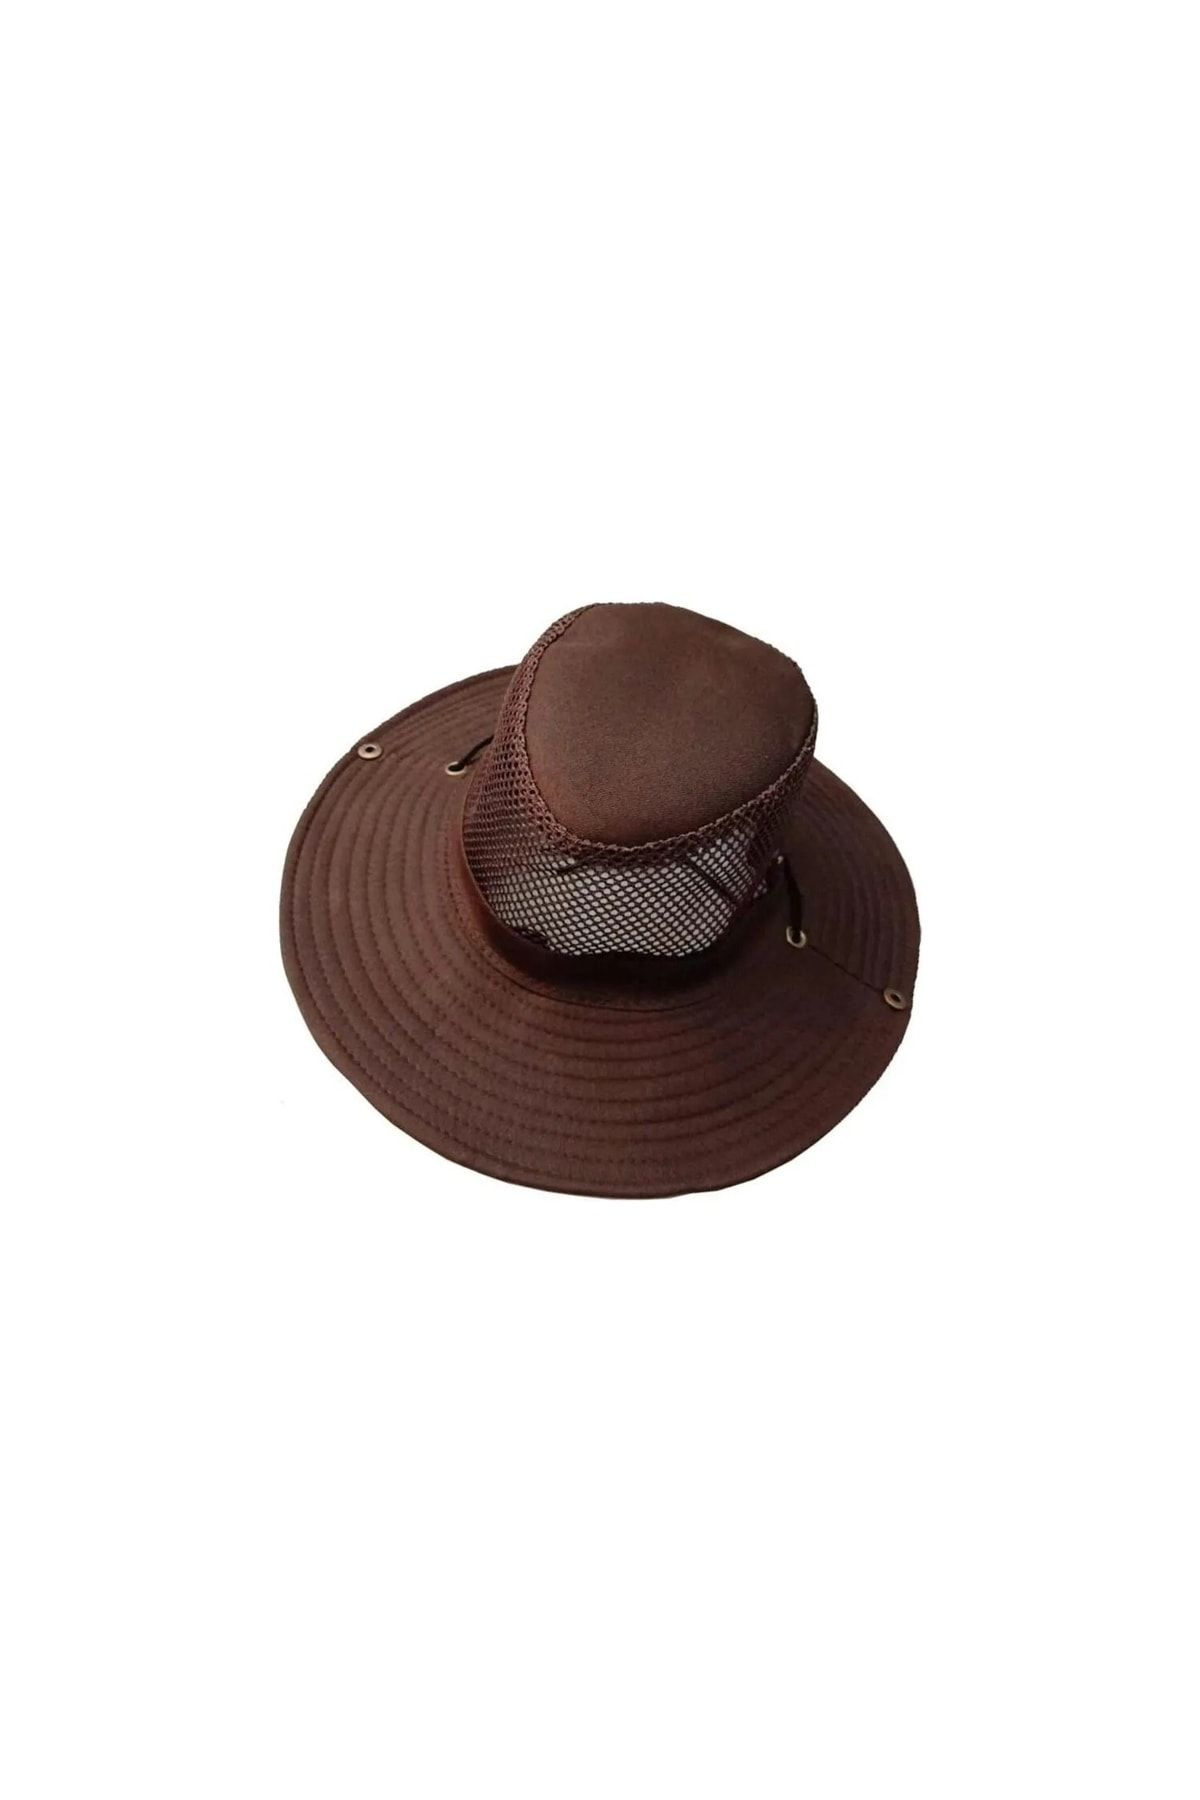 Neler Geldi Neler Kahverengi Erkek Katlanabilir Yazlık Fileli Fötr Şapka Foter Şapka Yazlık Fötür Şapka